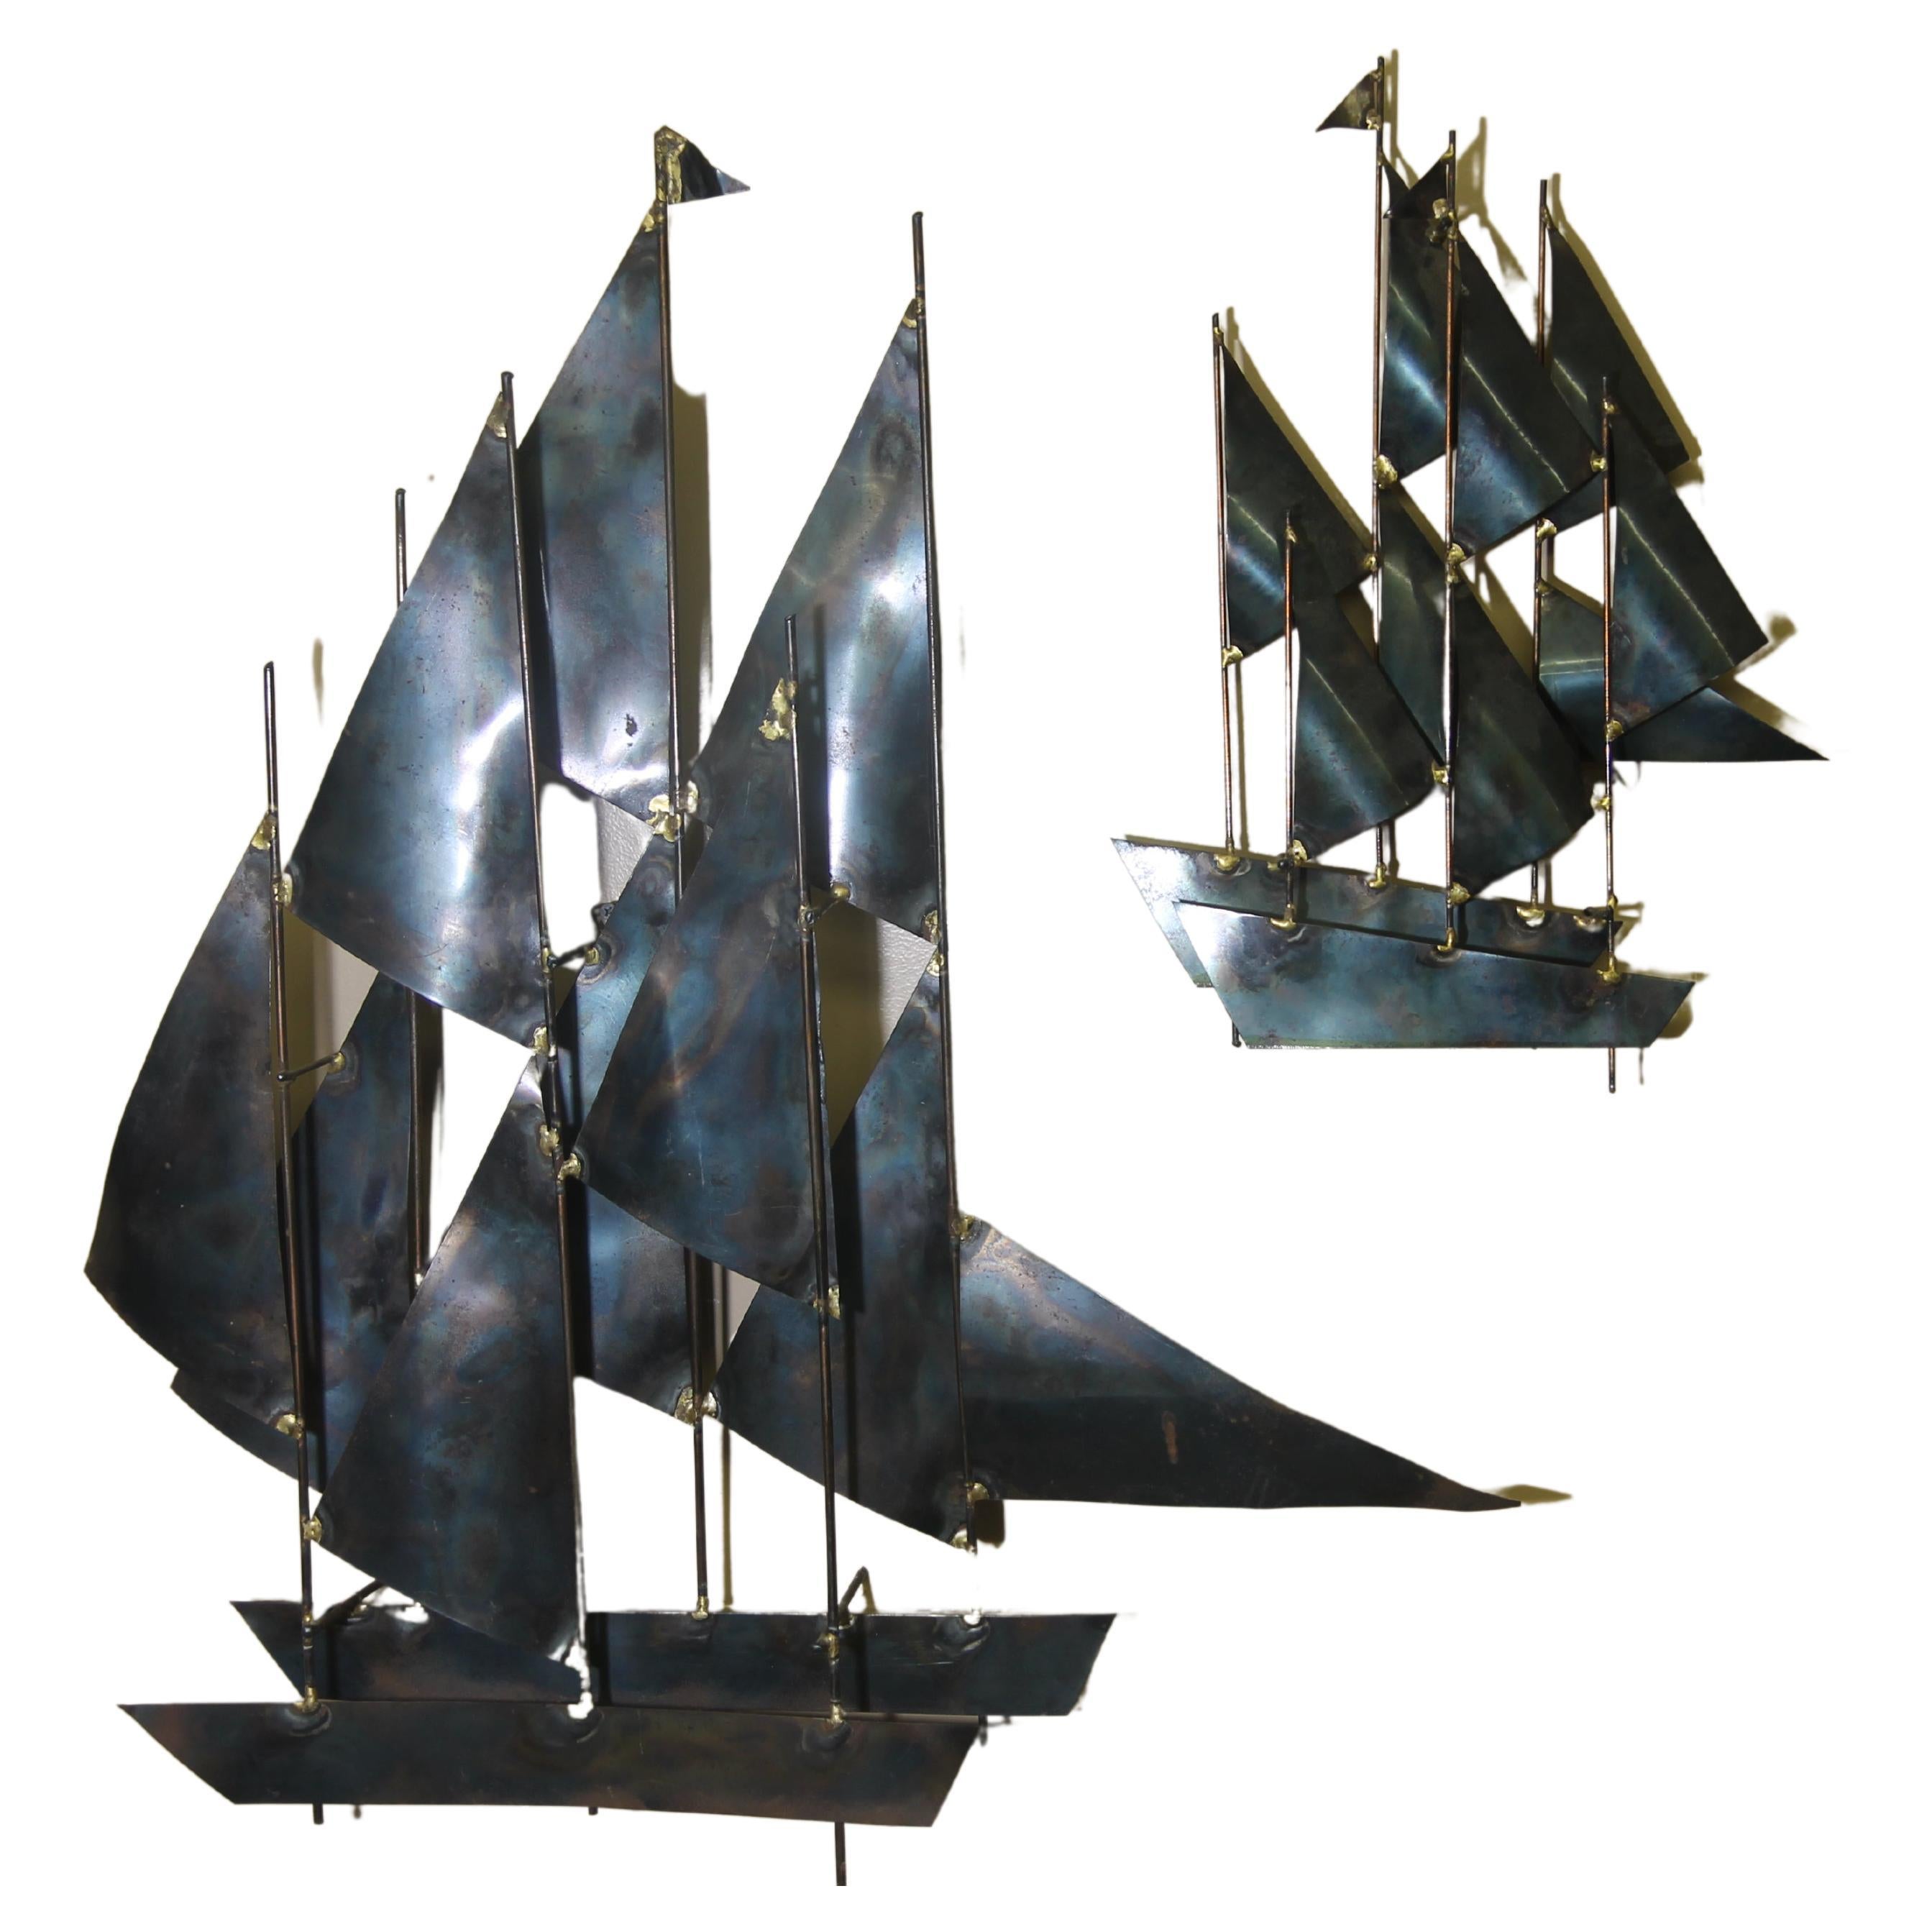 Wandskulptur mit Segelbooten aus Metall in der Art von Curtis Jere